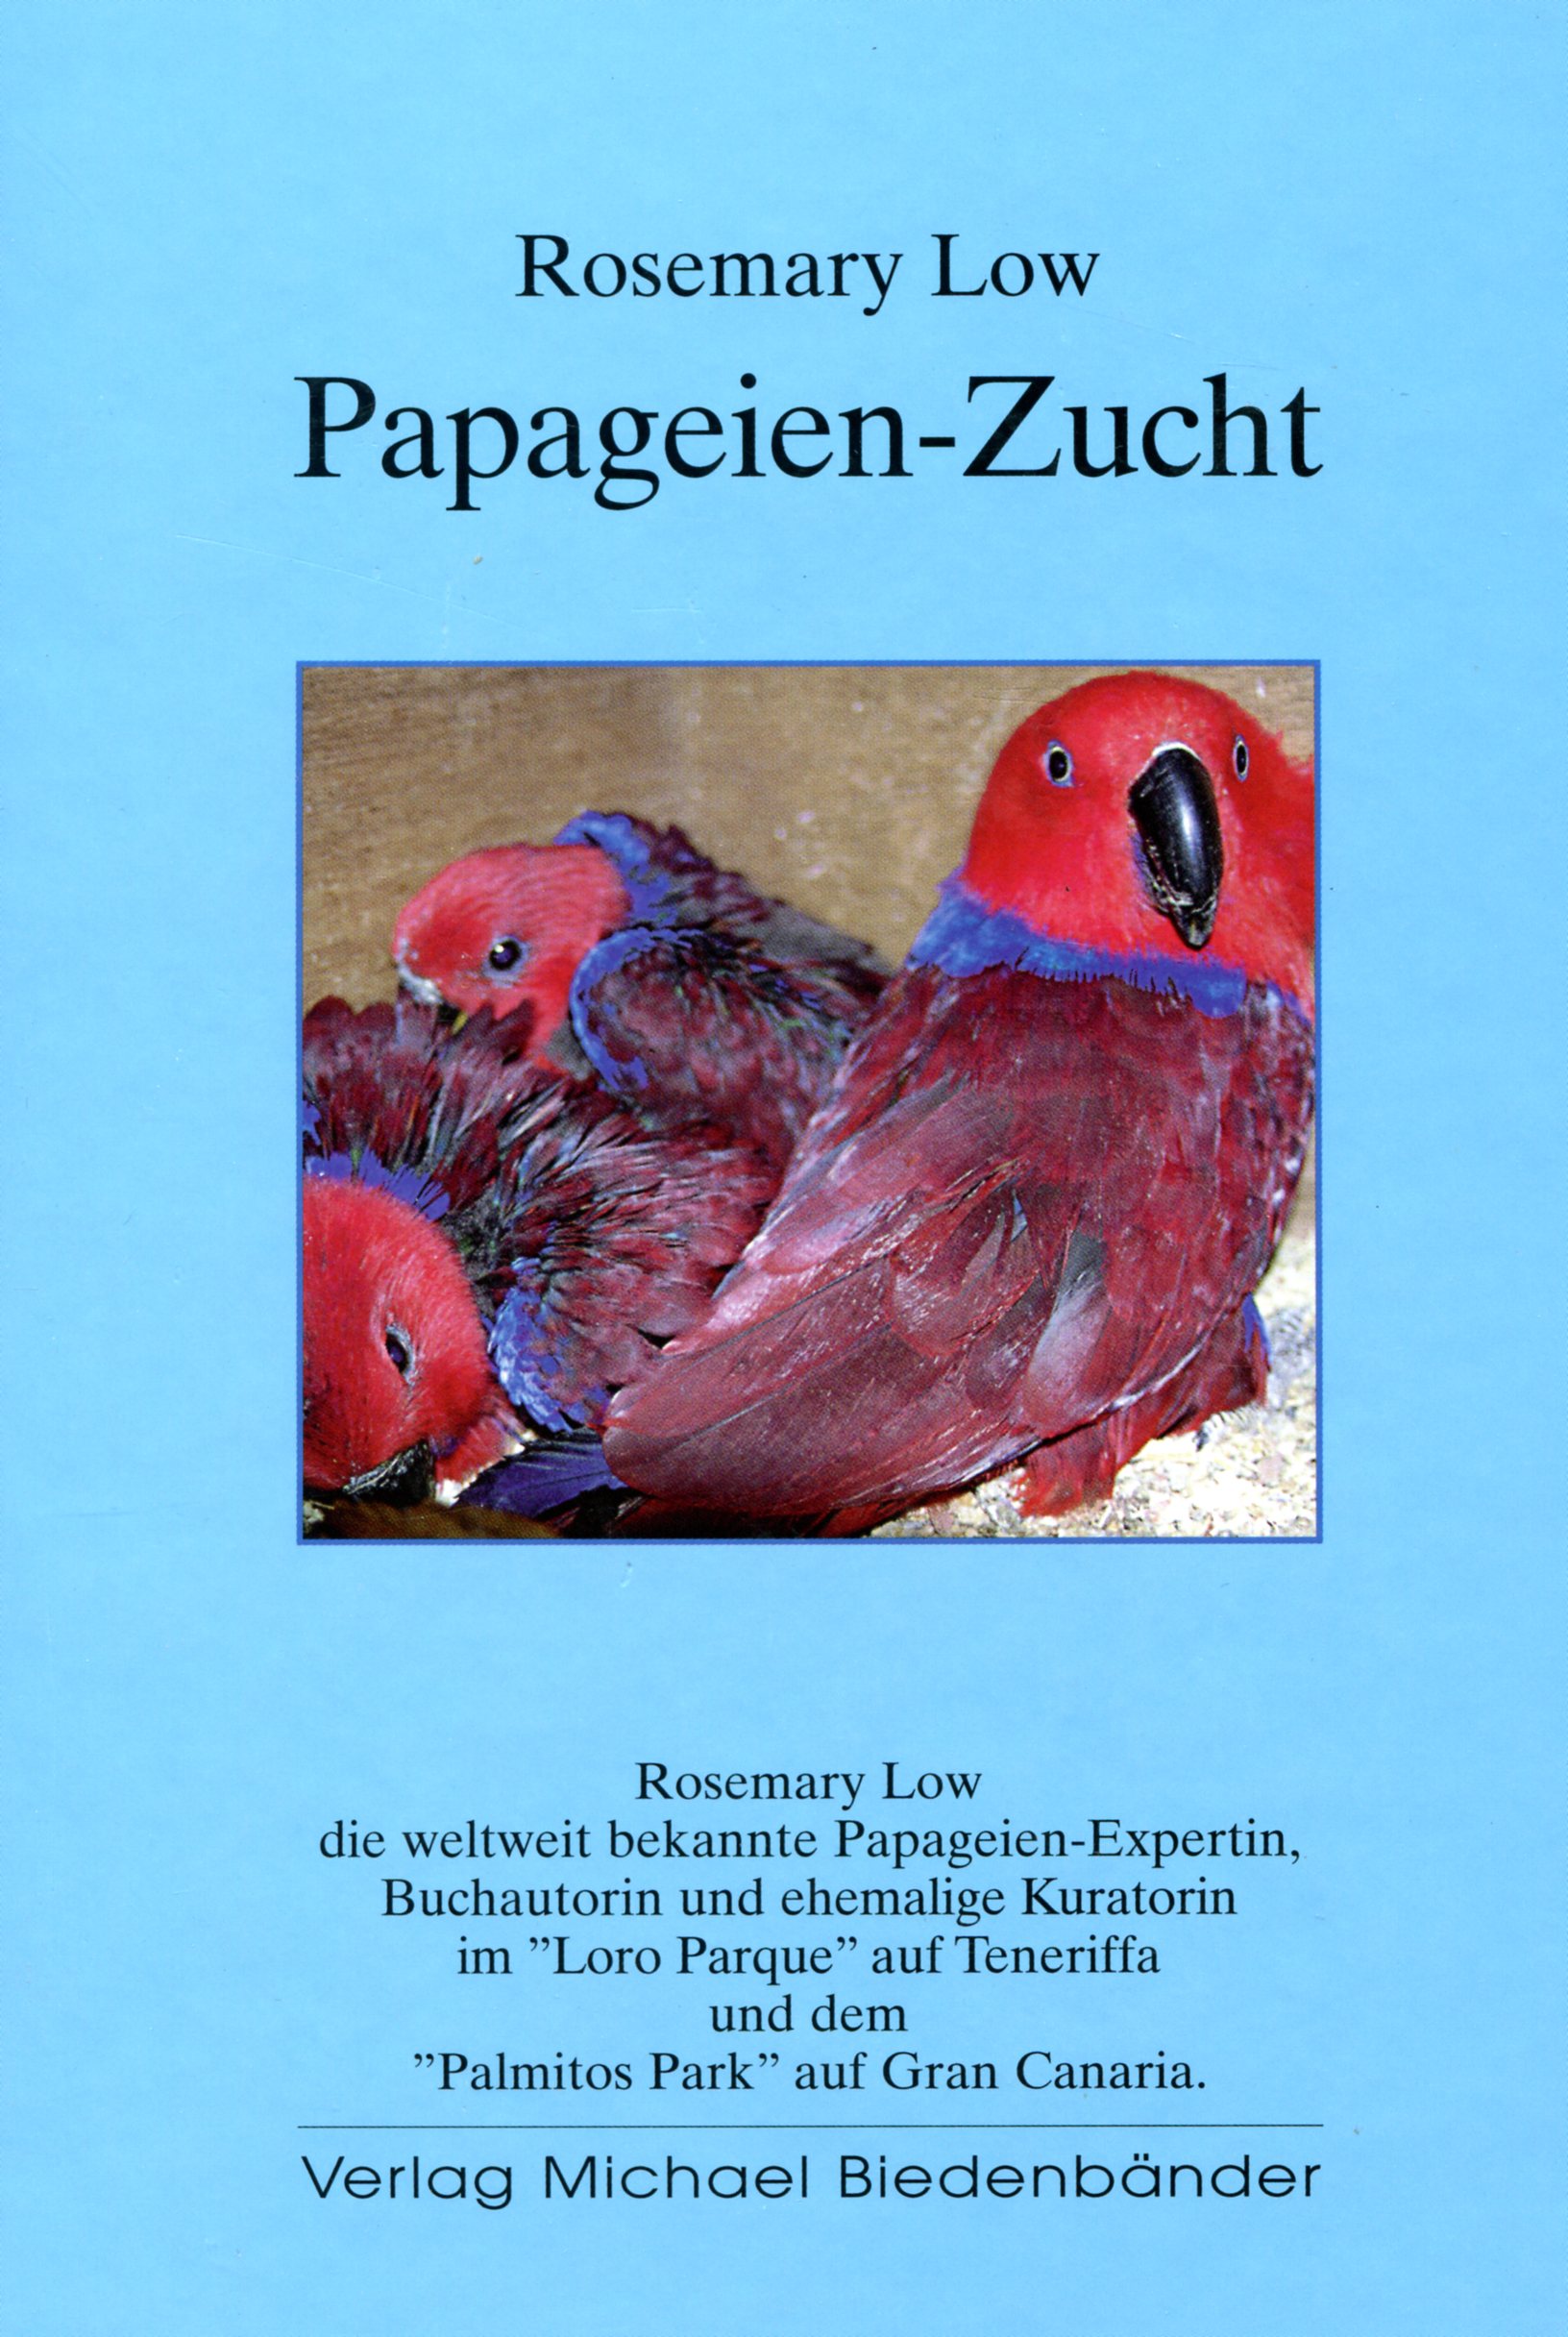 Papageien-Zucht